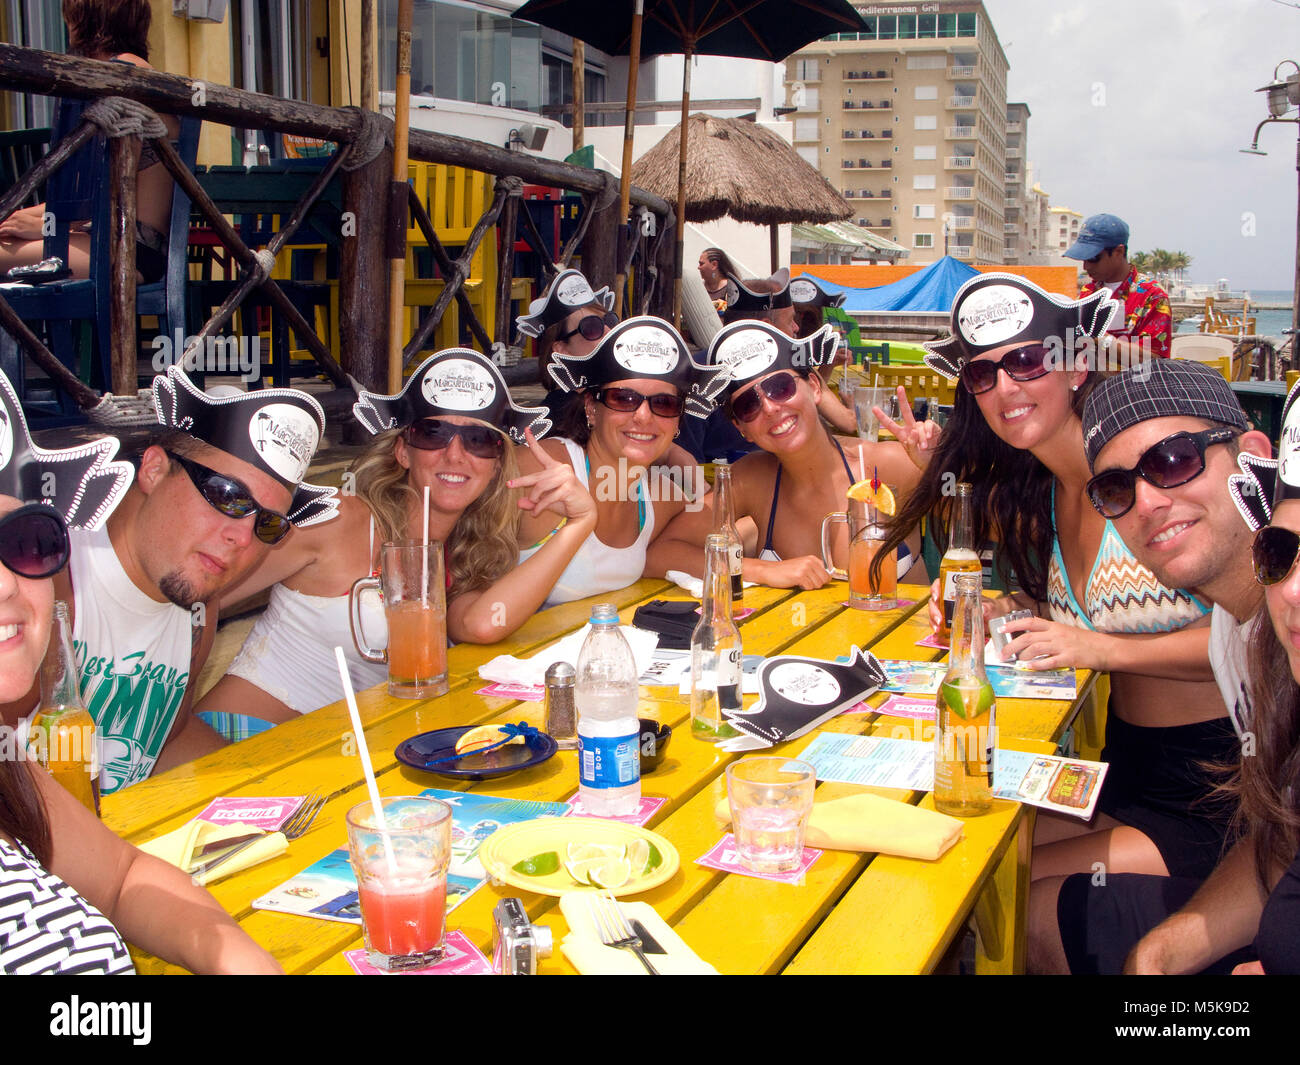 Los jóvenes turistas con tapas pirata celebrando en el bar de la playa, los buceadores bar Margaritaville, San Miguel, Cozumel, México, el Caribe Foto de stock